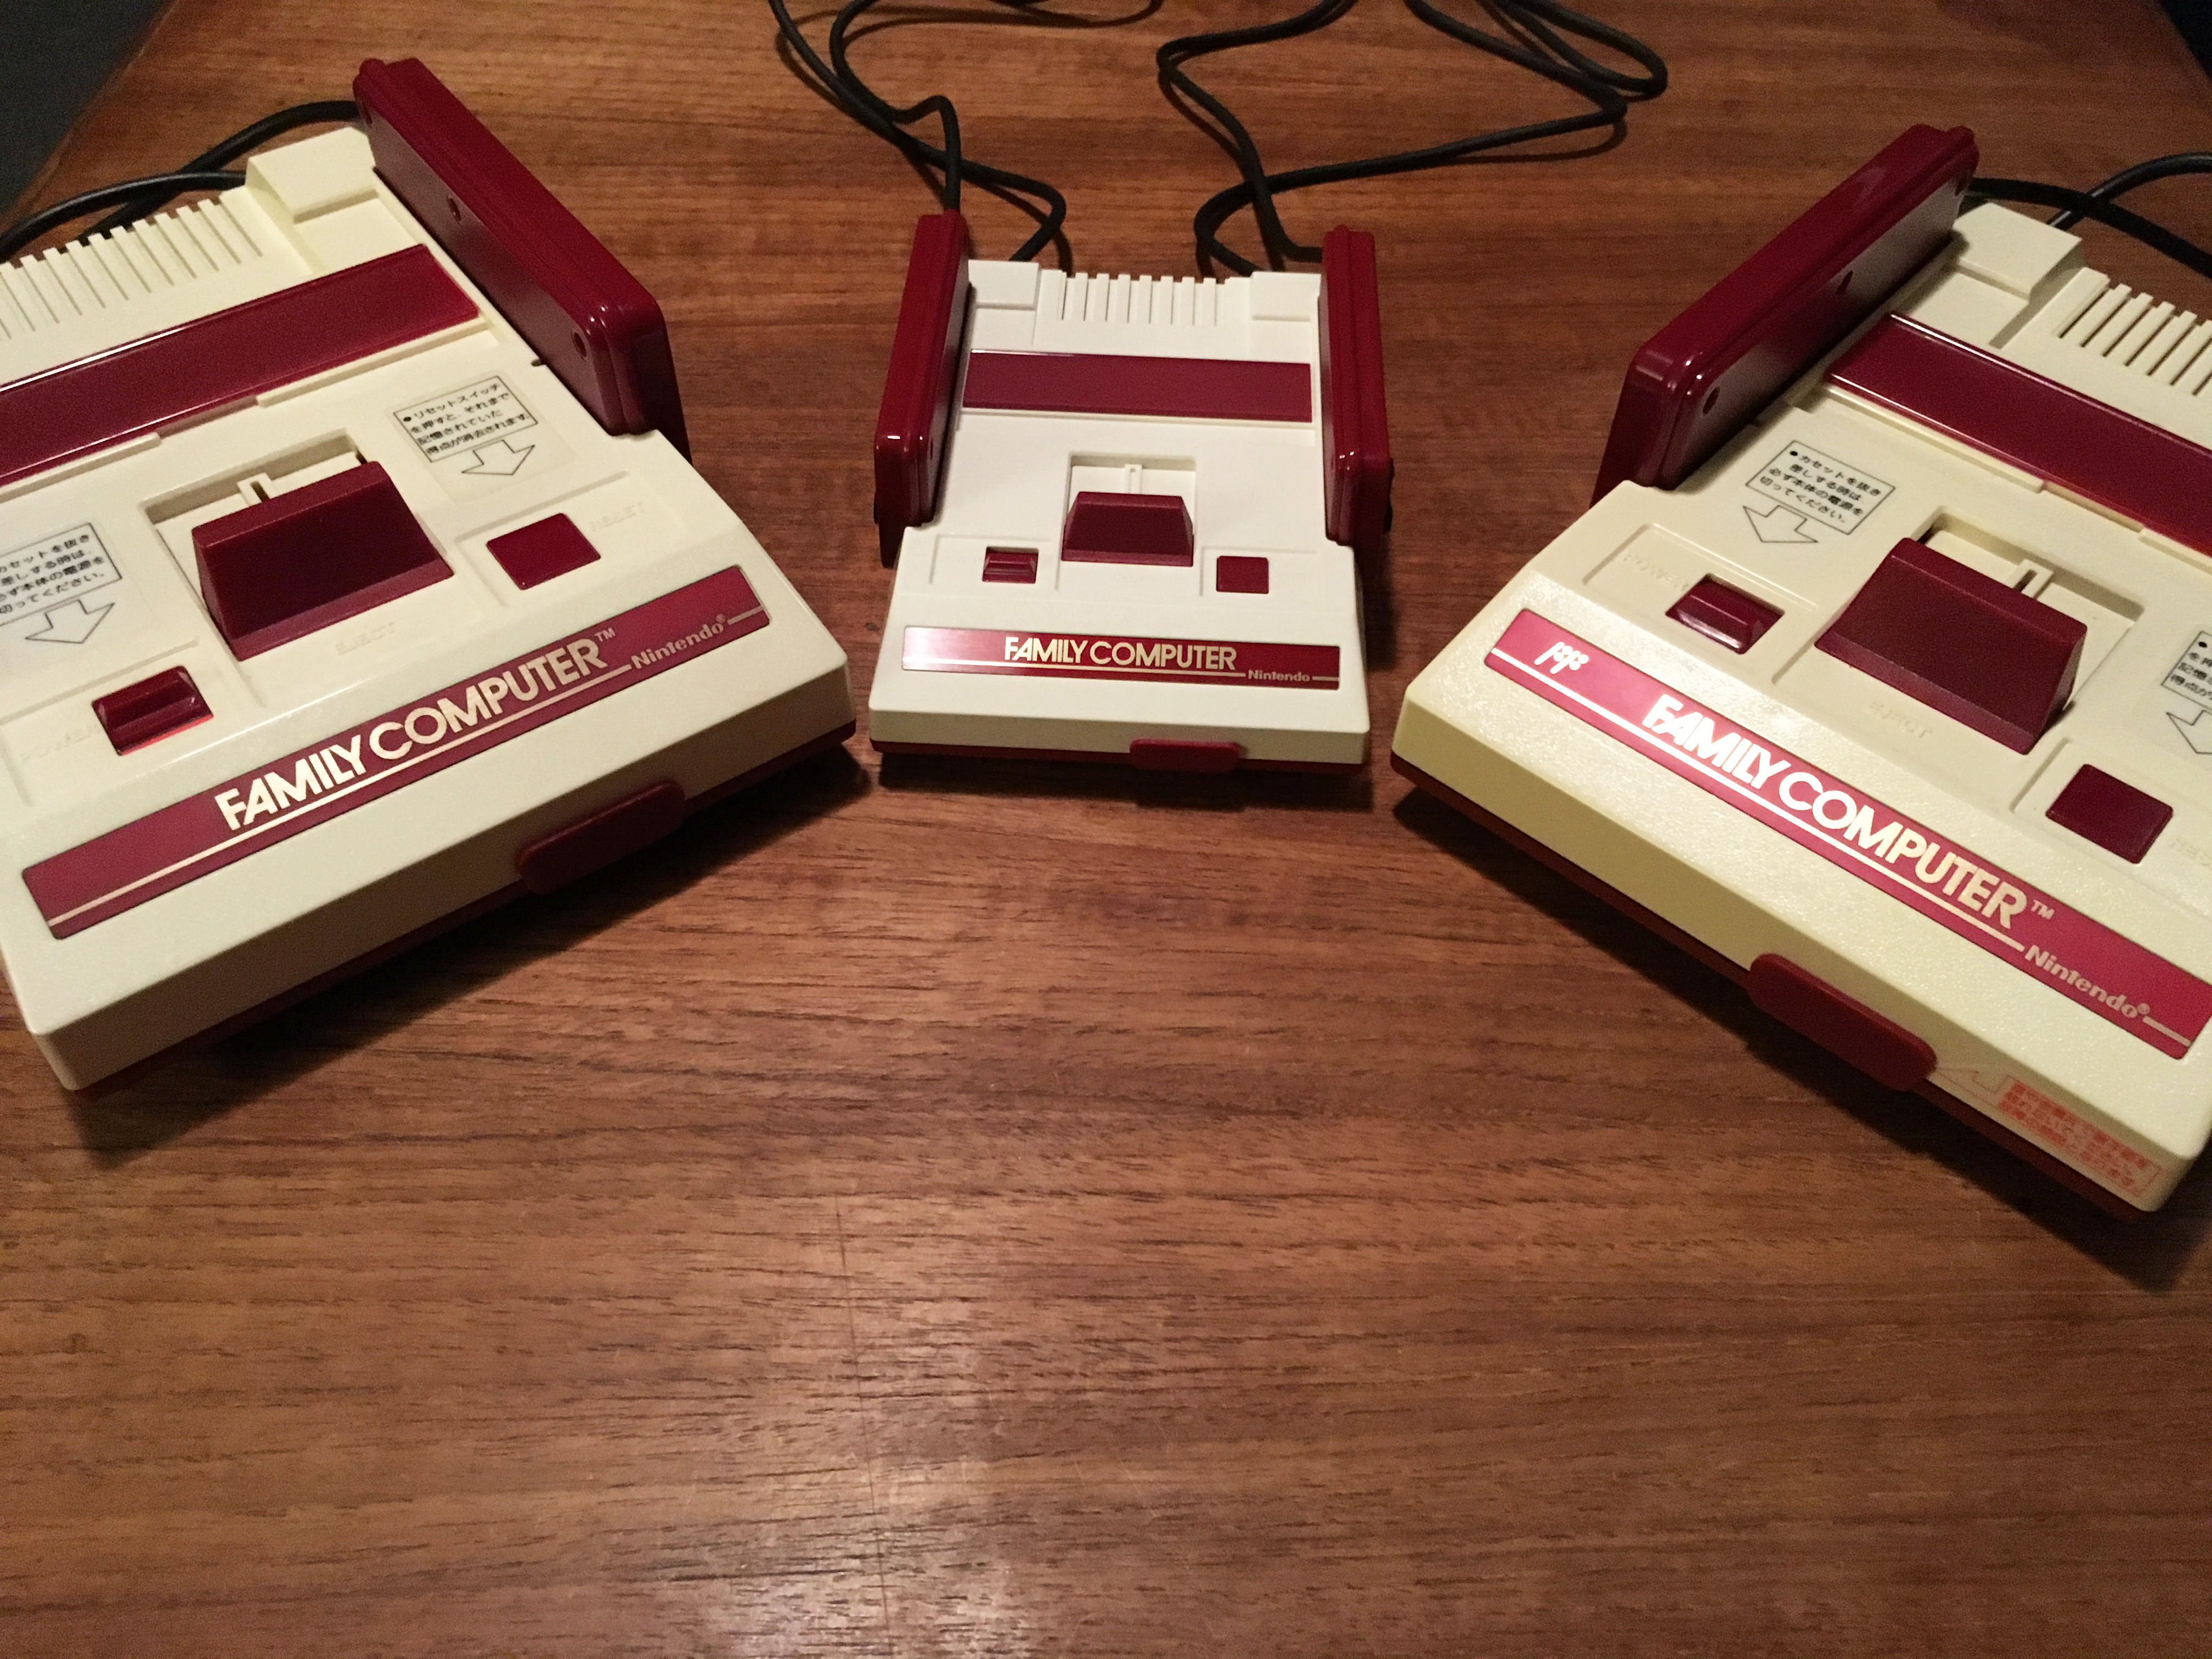 Nintendo компьютер. Nintendo Famicom Mini. Famicom 1983. Клоны NES Famicom. Клон Famicom 1992.